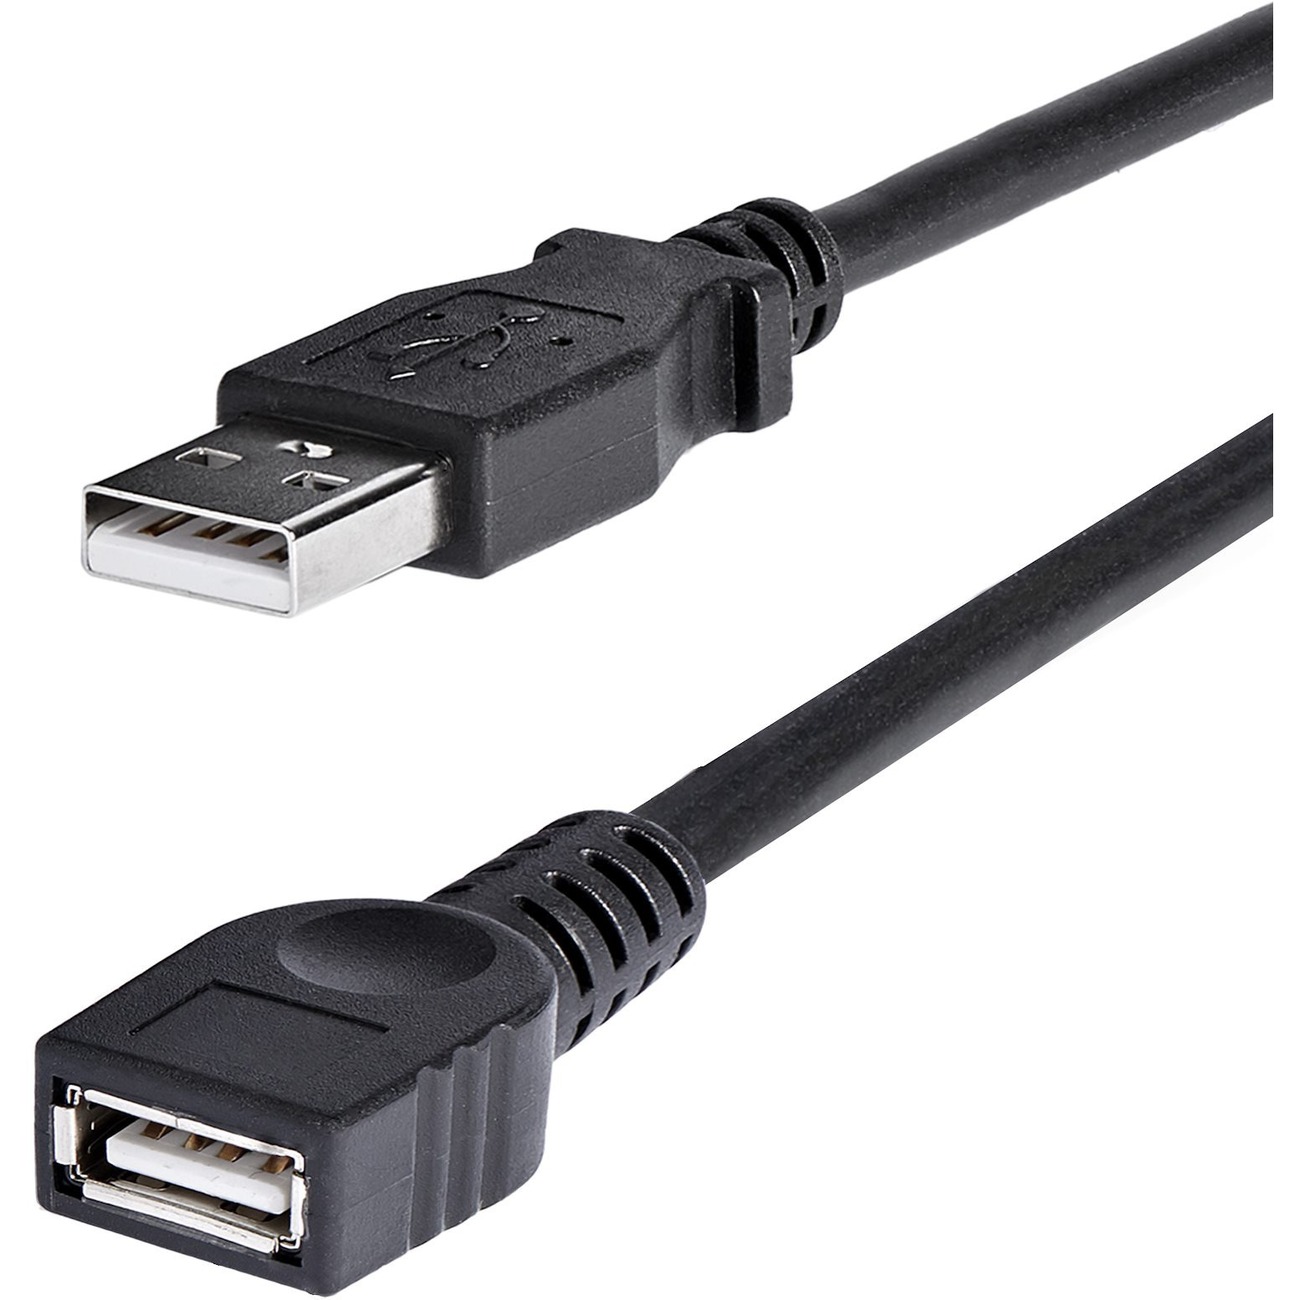 StarTech.com USBEXTAA6BK 6 ft Black USB 2.0 Extension Cable A to A - - 6ft Extension Cable - 6ft USB male Cable USB Cables - Newegg.com